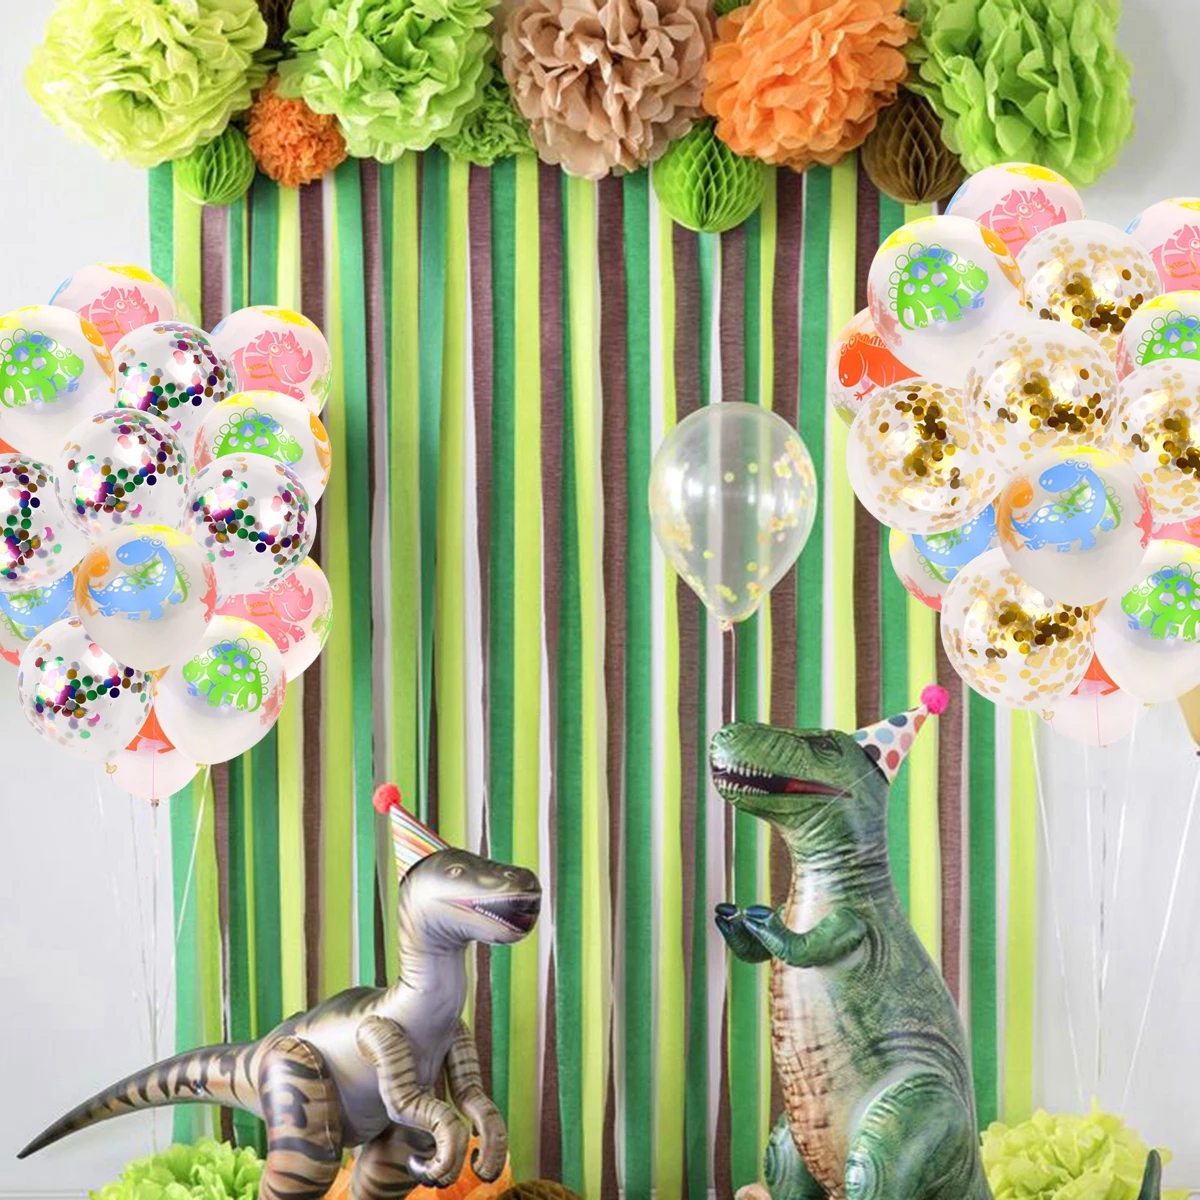 QIFU динозавр день рождения украшения Дети с днем рождения динозавр вечерние динозавры шары джунгли для вечеринки в стиле сафари Декор